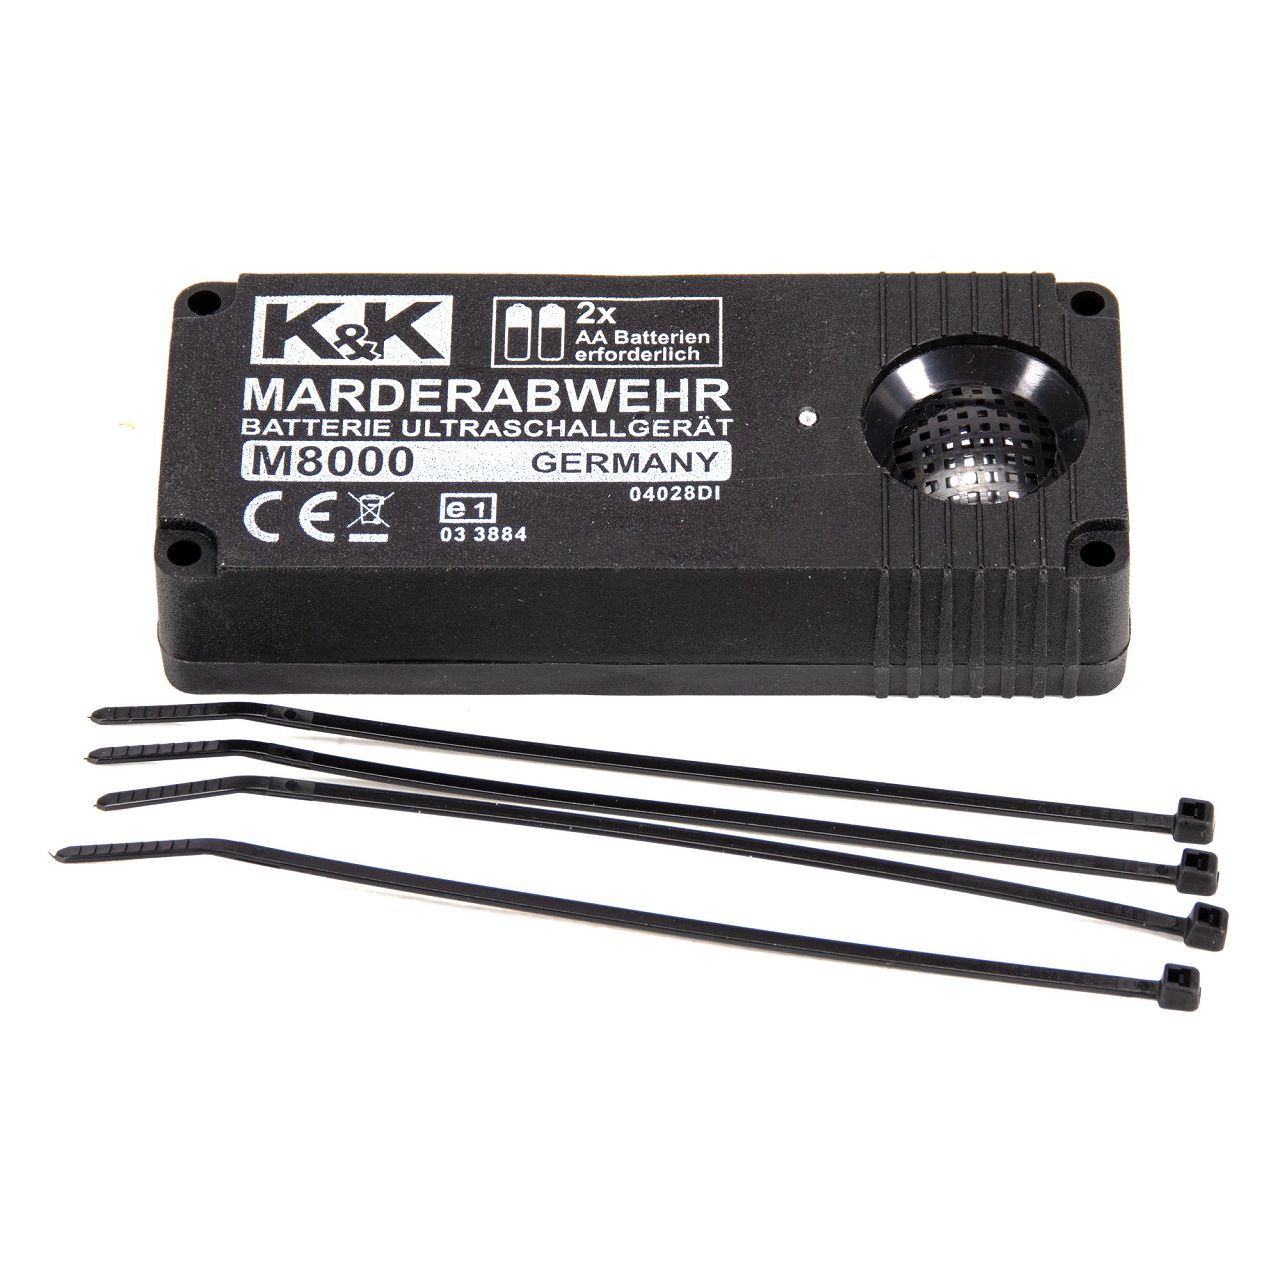 K&K Marderschutz Marderabwehr M8000 Ultraschallgerät 23 kHz 100 dB(A)